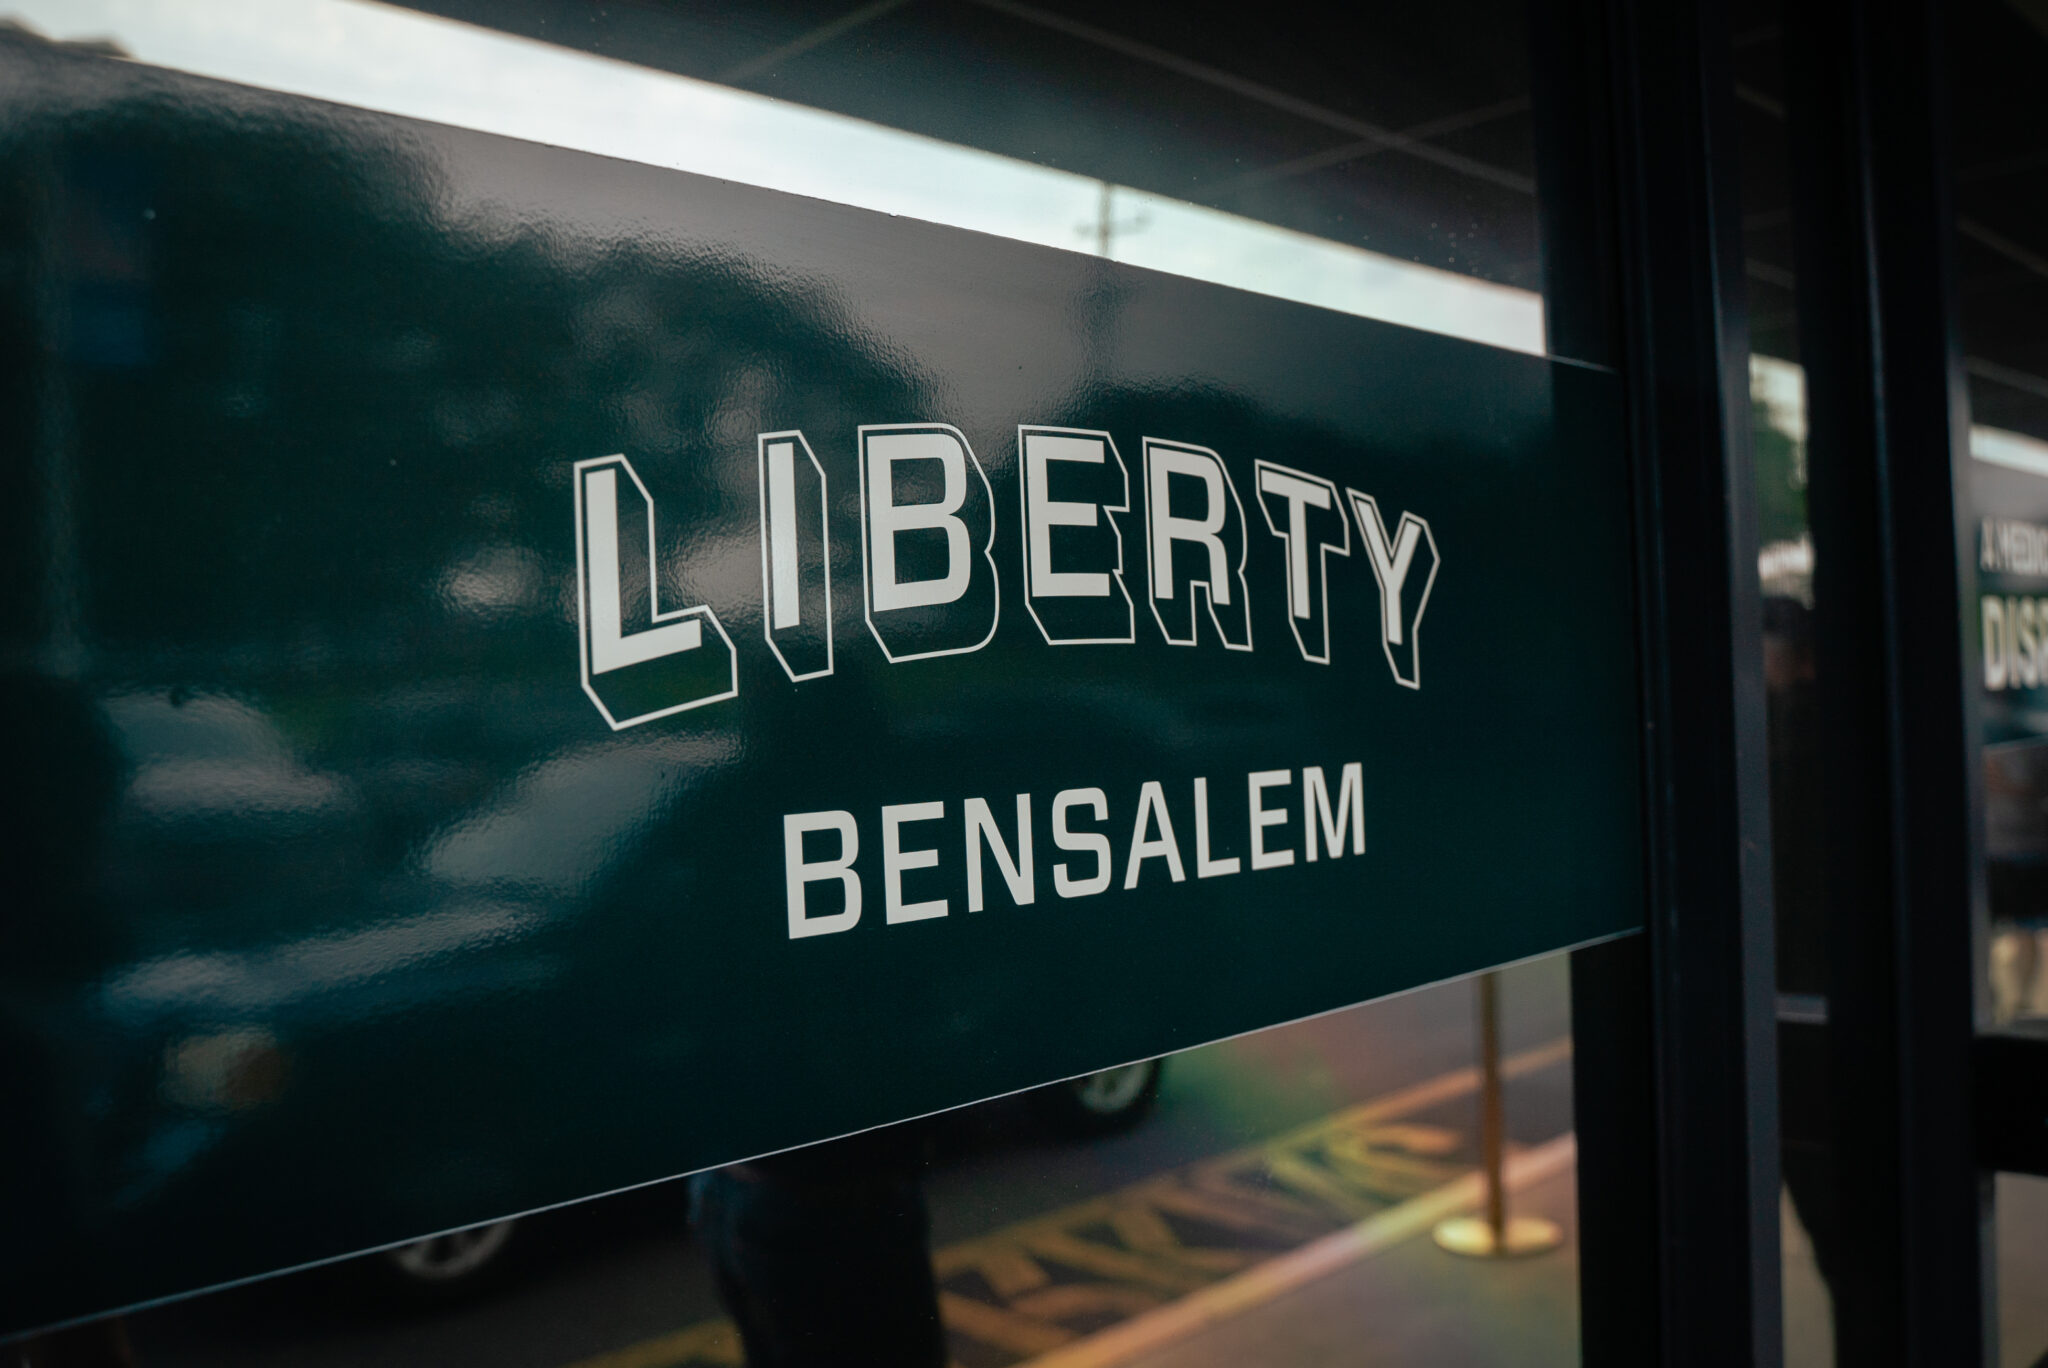 Liberty Bensalem Dispensary exterior signage